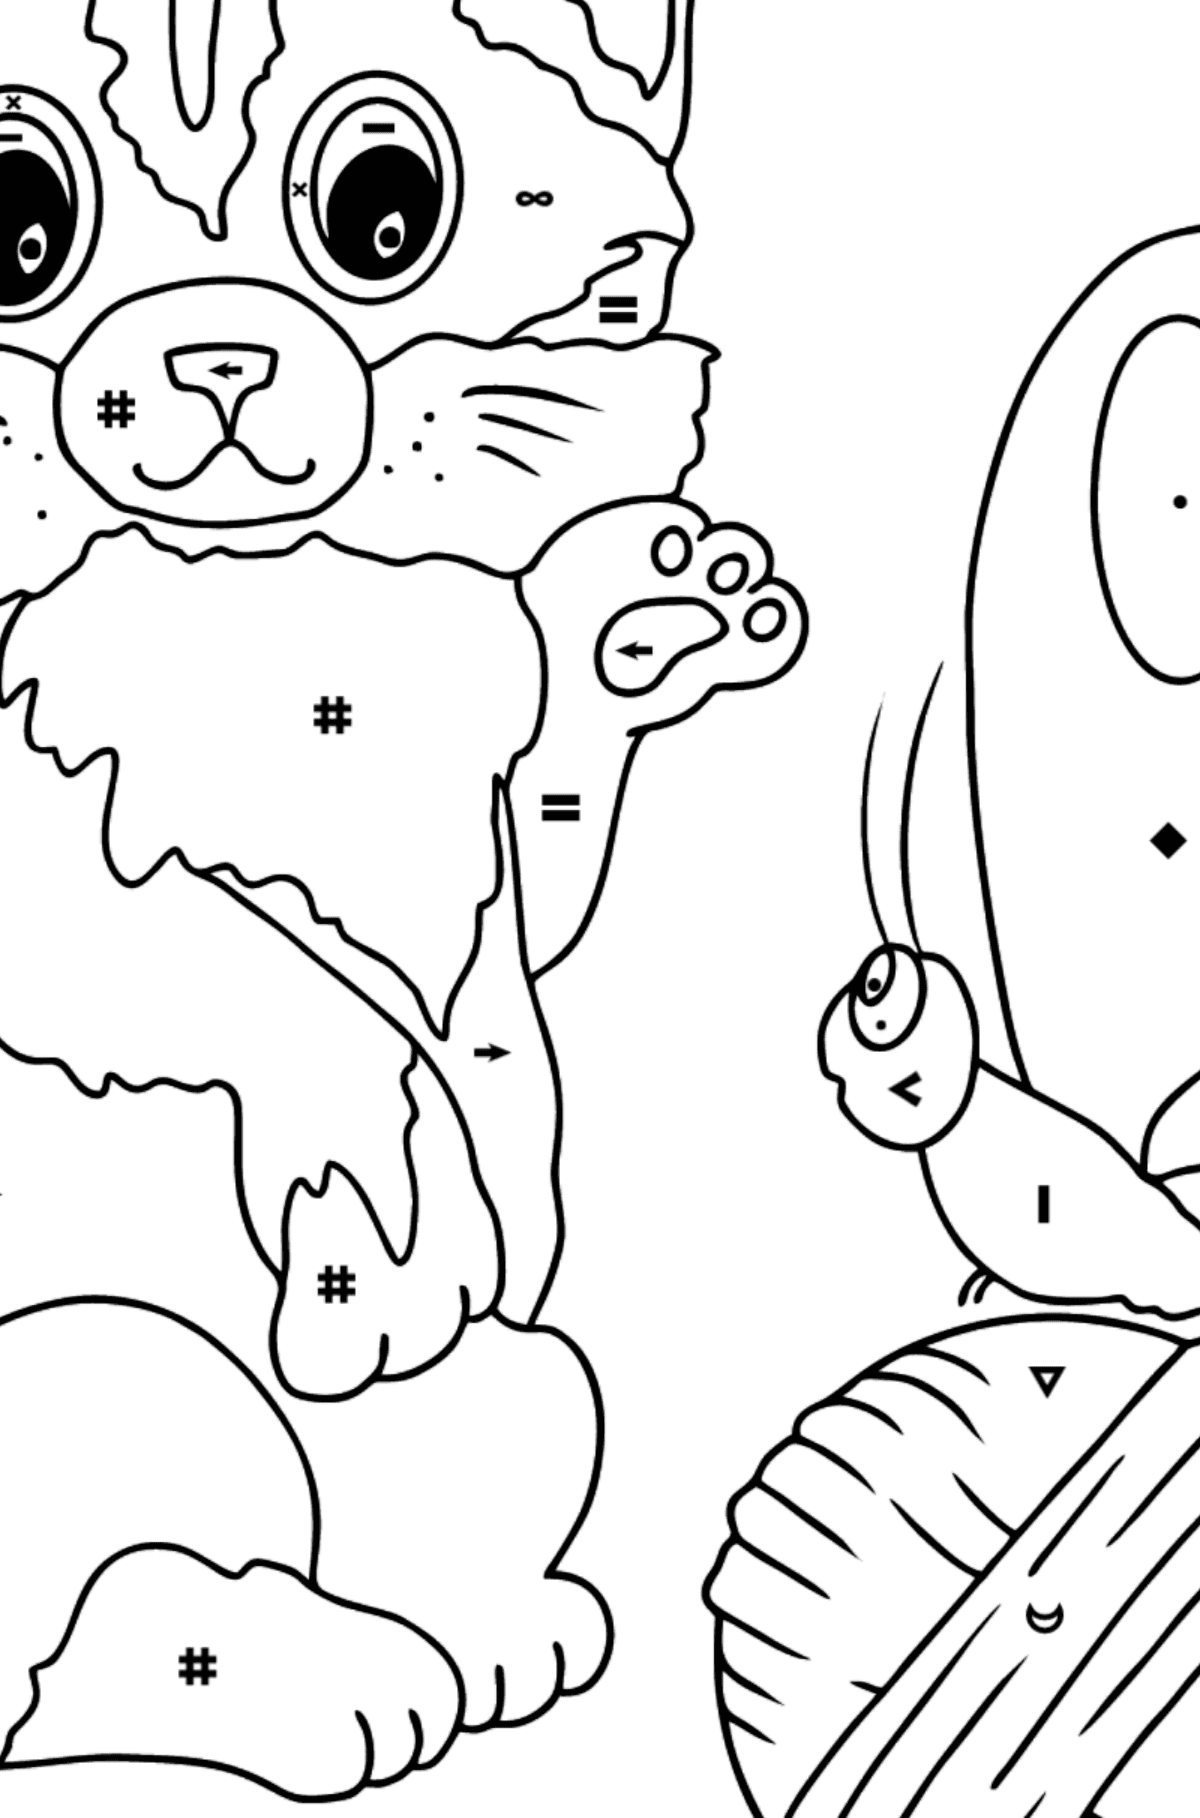 Disegno da colorare di gatto che gioca con una farfalla - Colorare per simboli per bambini